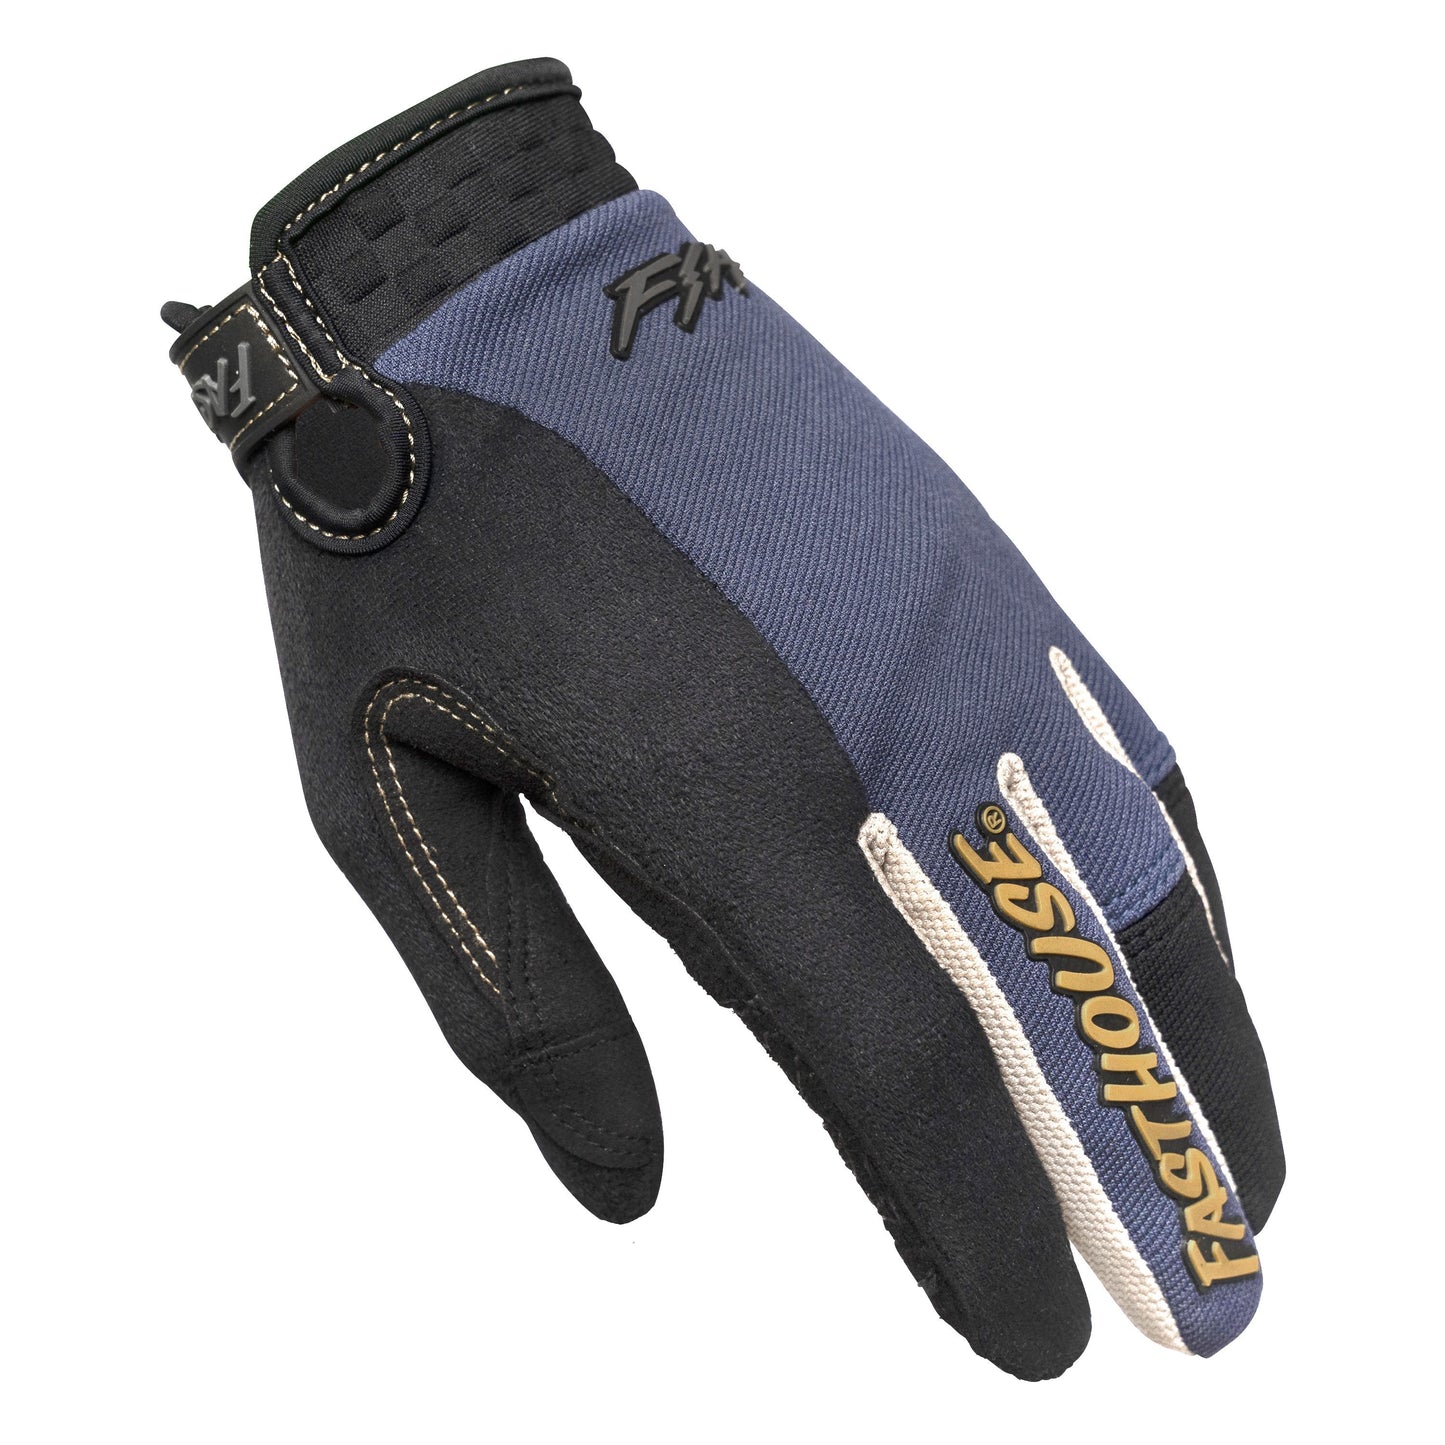 Fasthouse Ronin Ridgeline Glove Midnight Navy Bike Gloves